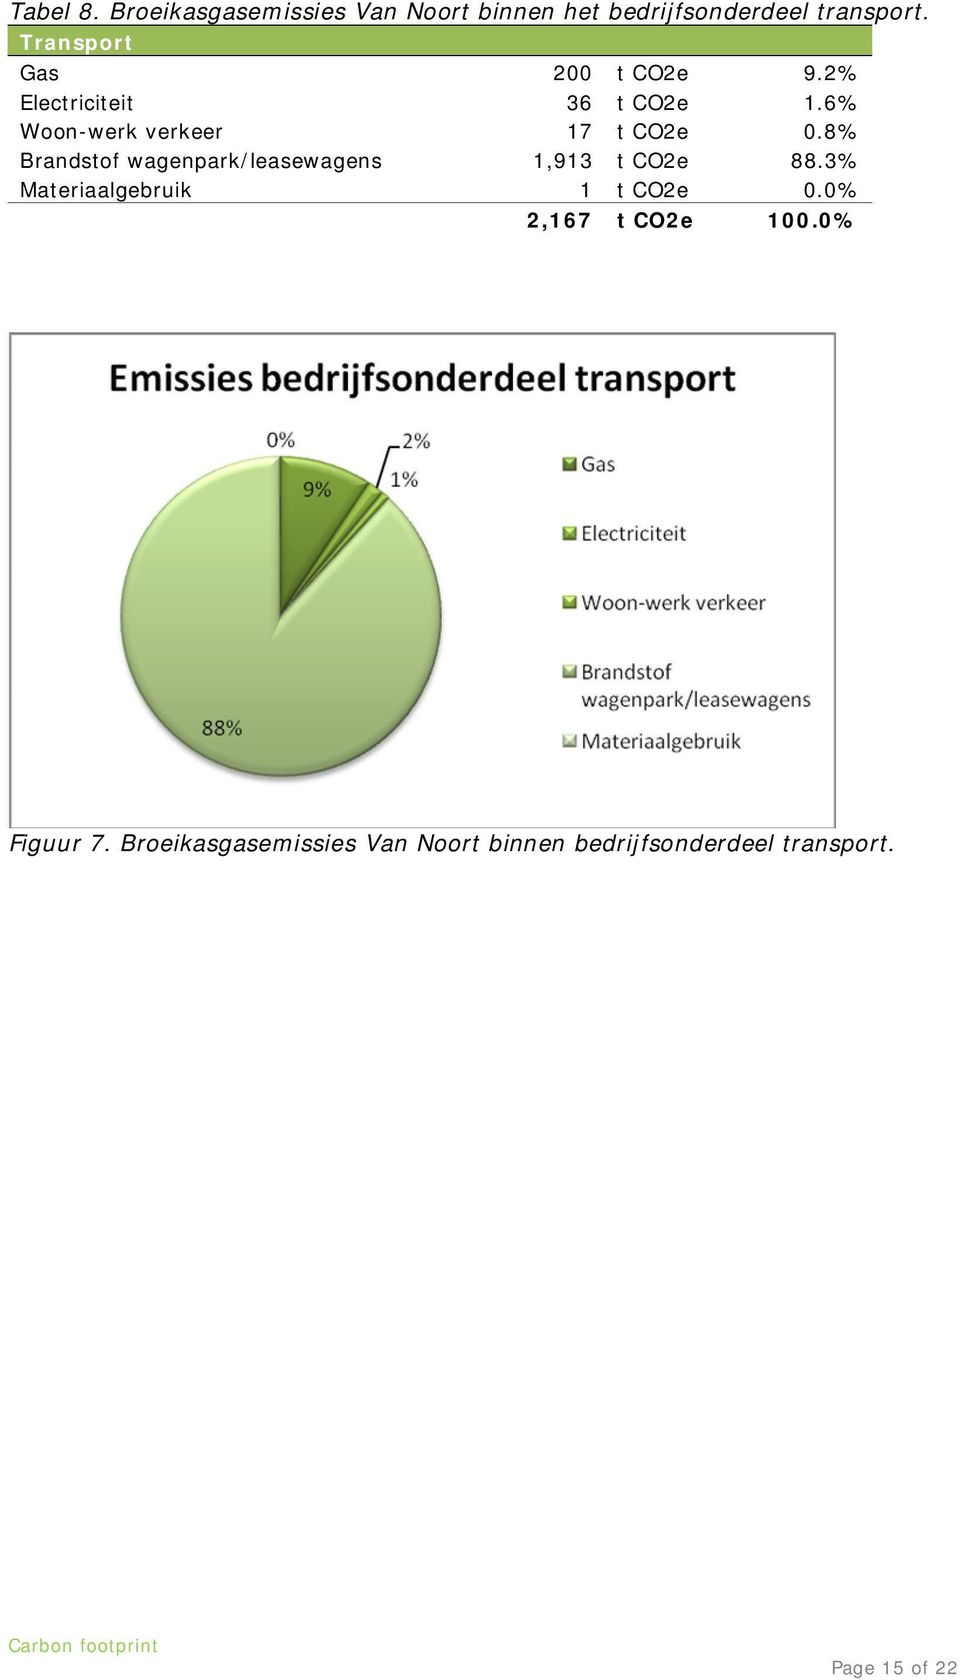 8% Brandstof wagenpark/leasewagens 1,913 t CO2e 88.3% Materiaalgebruik 1 t CO2e 0.